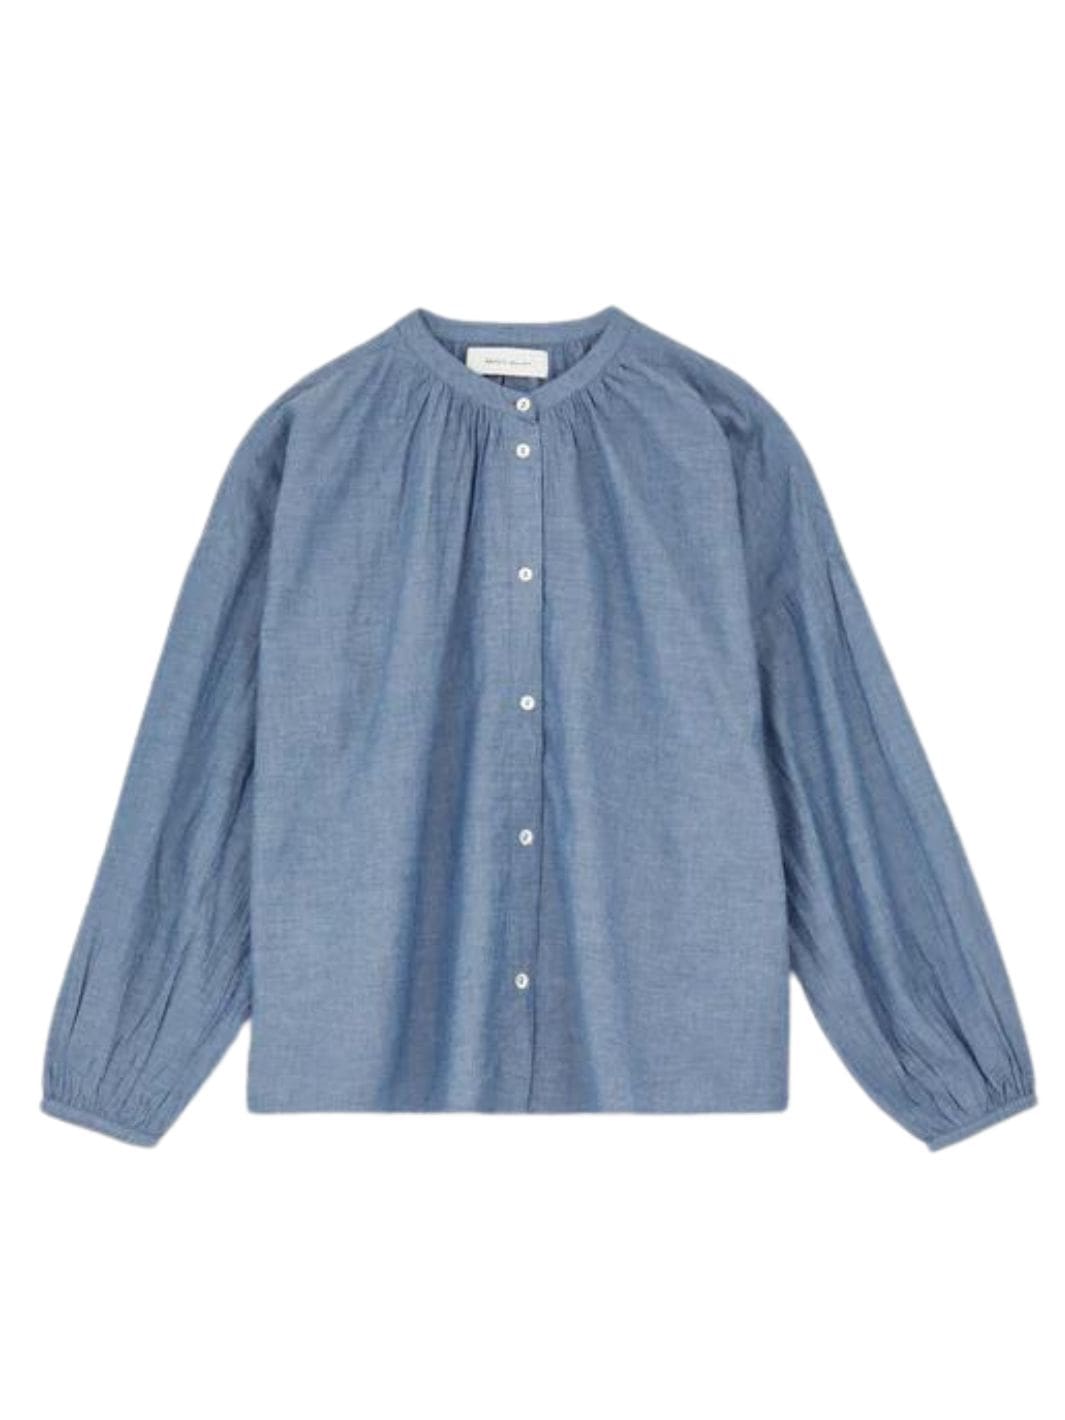 Skall Studio Shirts Skjorte | Cilla Shirt Blue Chambray